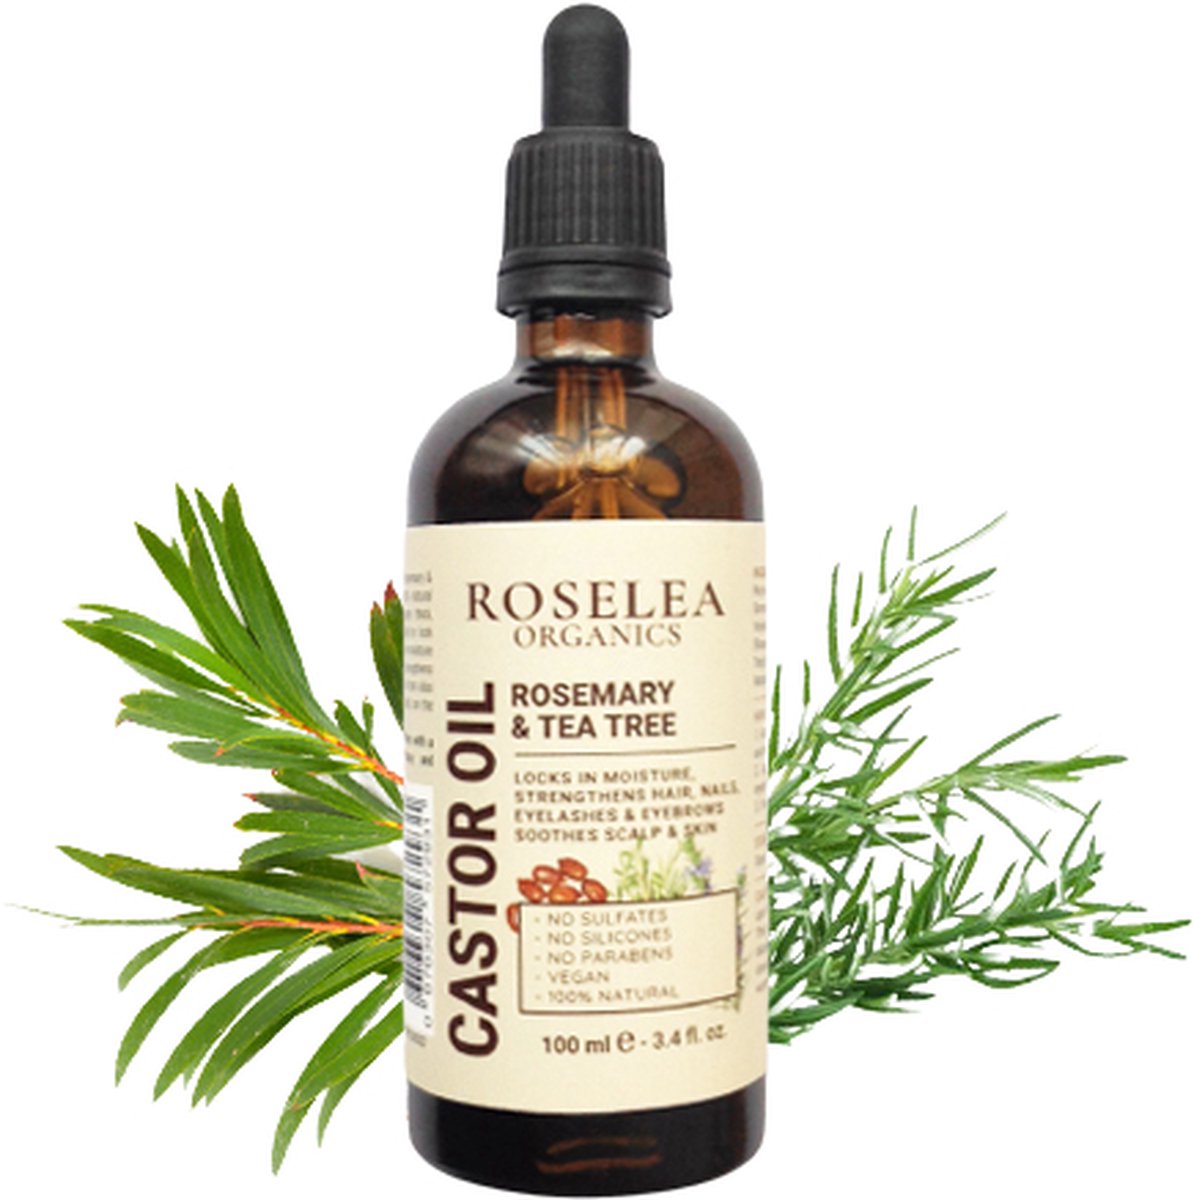 Roselea Organics - Biologische Castor Olie met Rozemarijn & Tea Tree – Voedt het haar en stimuleert de haargroei. Versterkt haar, wimpers, wenkbrauwen en nagels - Al onze Ingrediënten zijn Natuurlijk (100 %) en Biologisch (99 %) - 100 ml